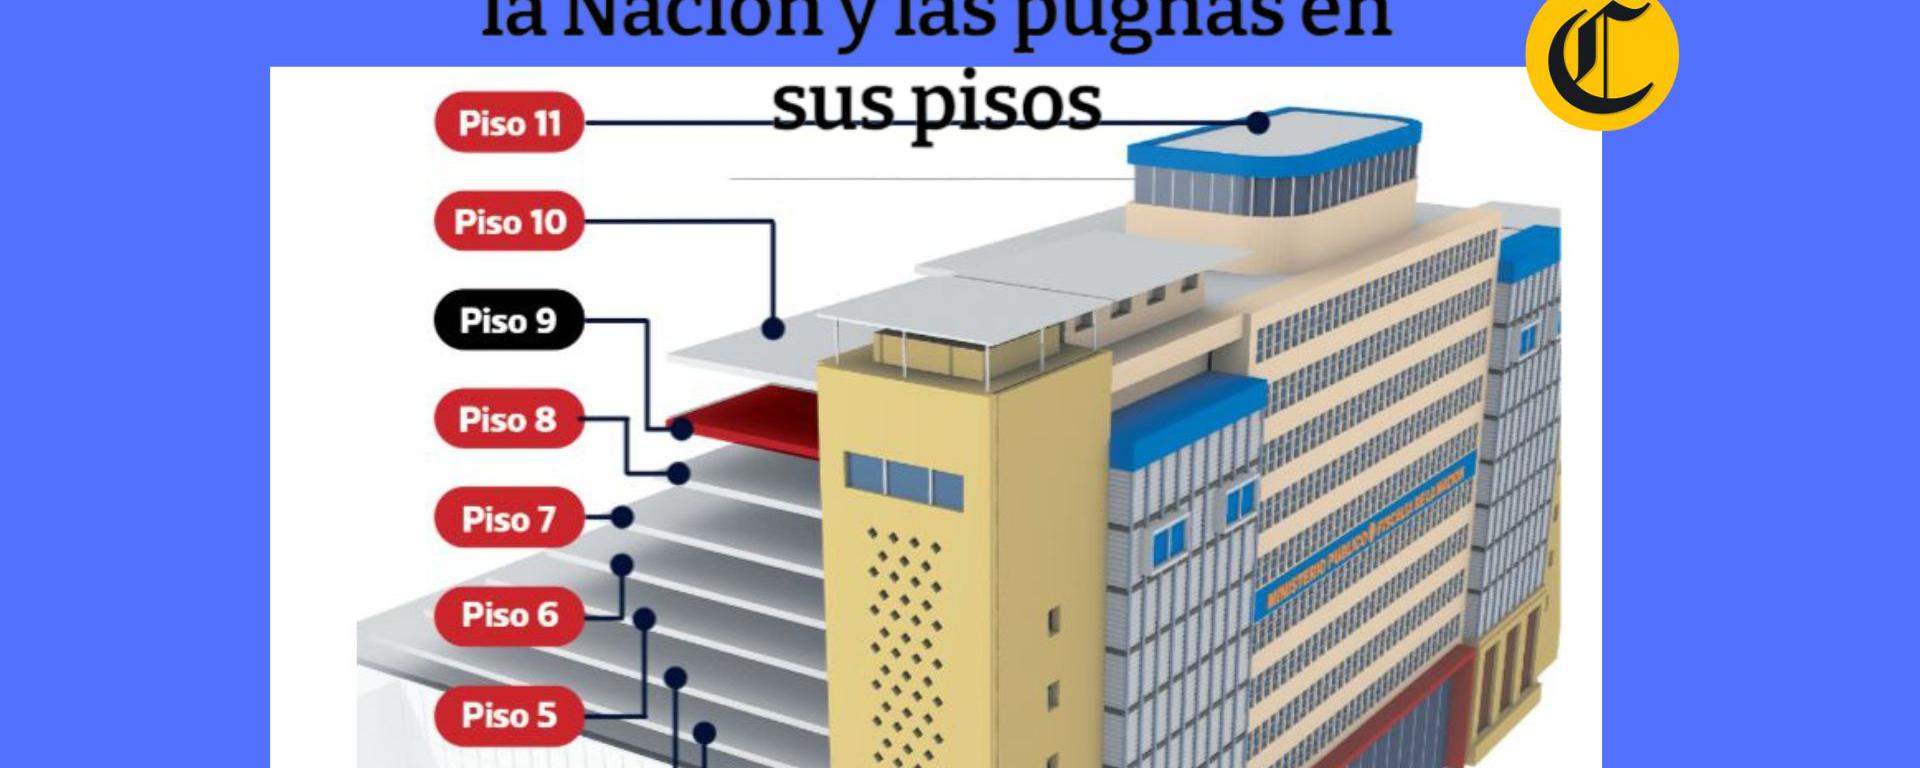 El edificio de la Fiscalía de la Nación y las pugnas en sus pisos: ¿cómo es por dentro su sede central?